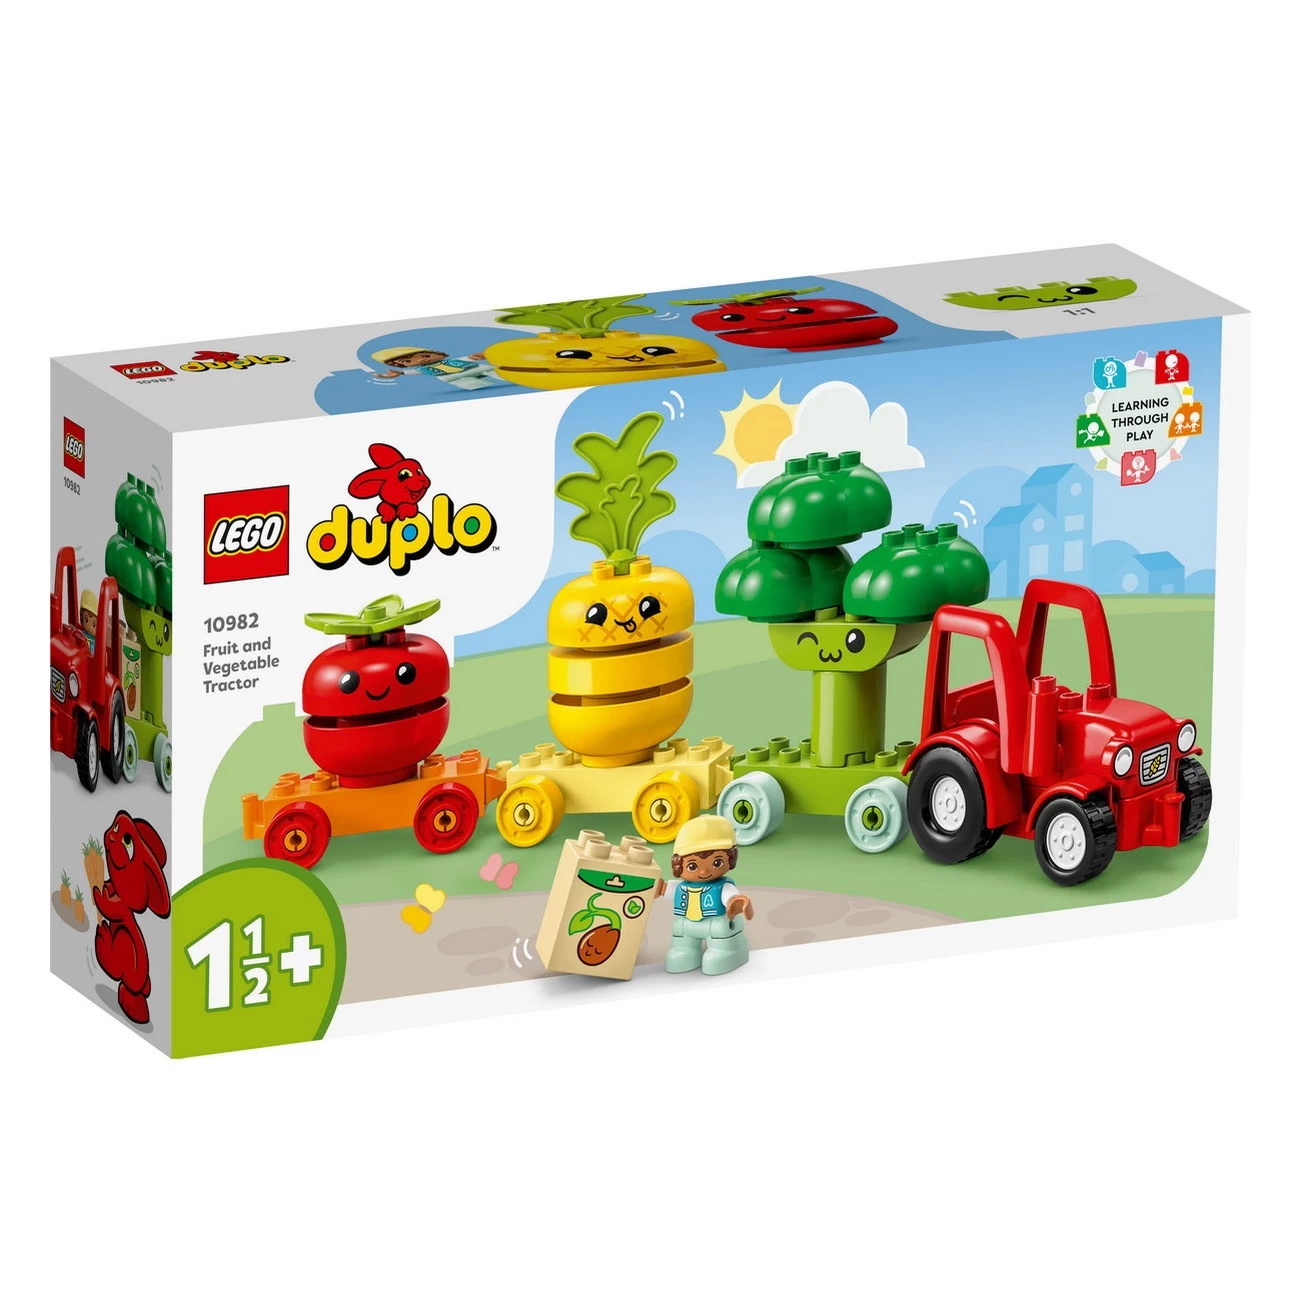 LEGO DUPLO 10982 - Obst-und Gemüse-Traktor